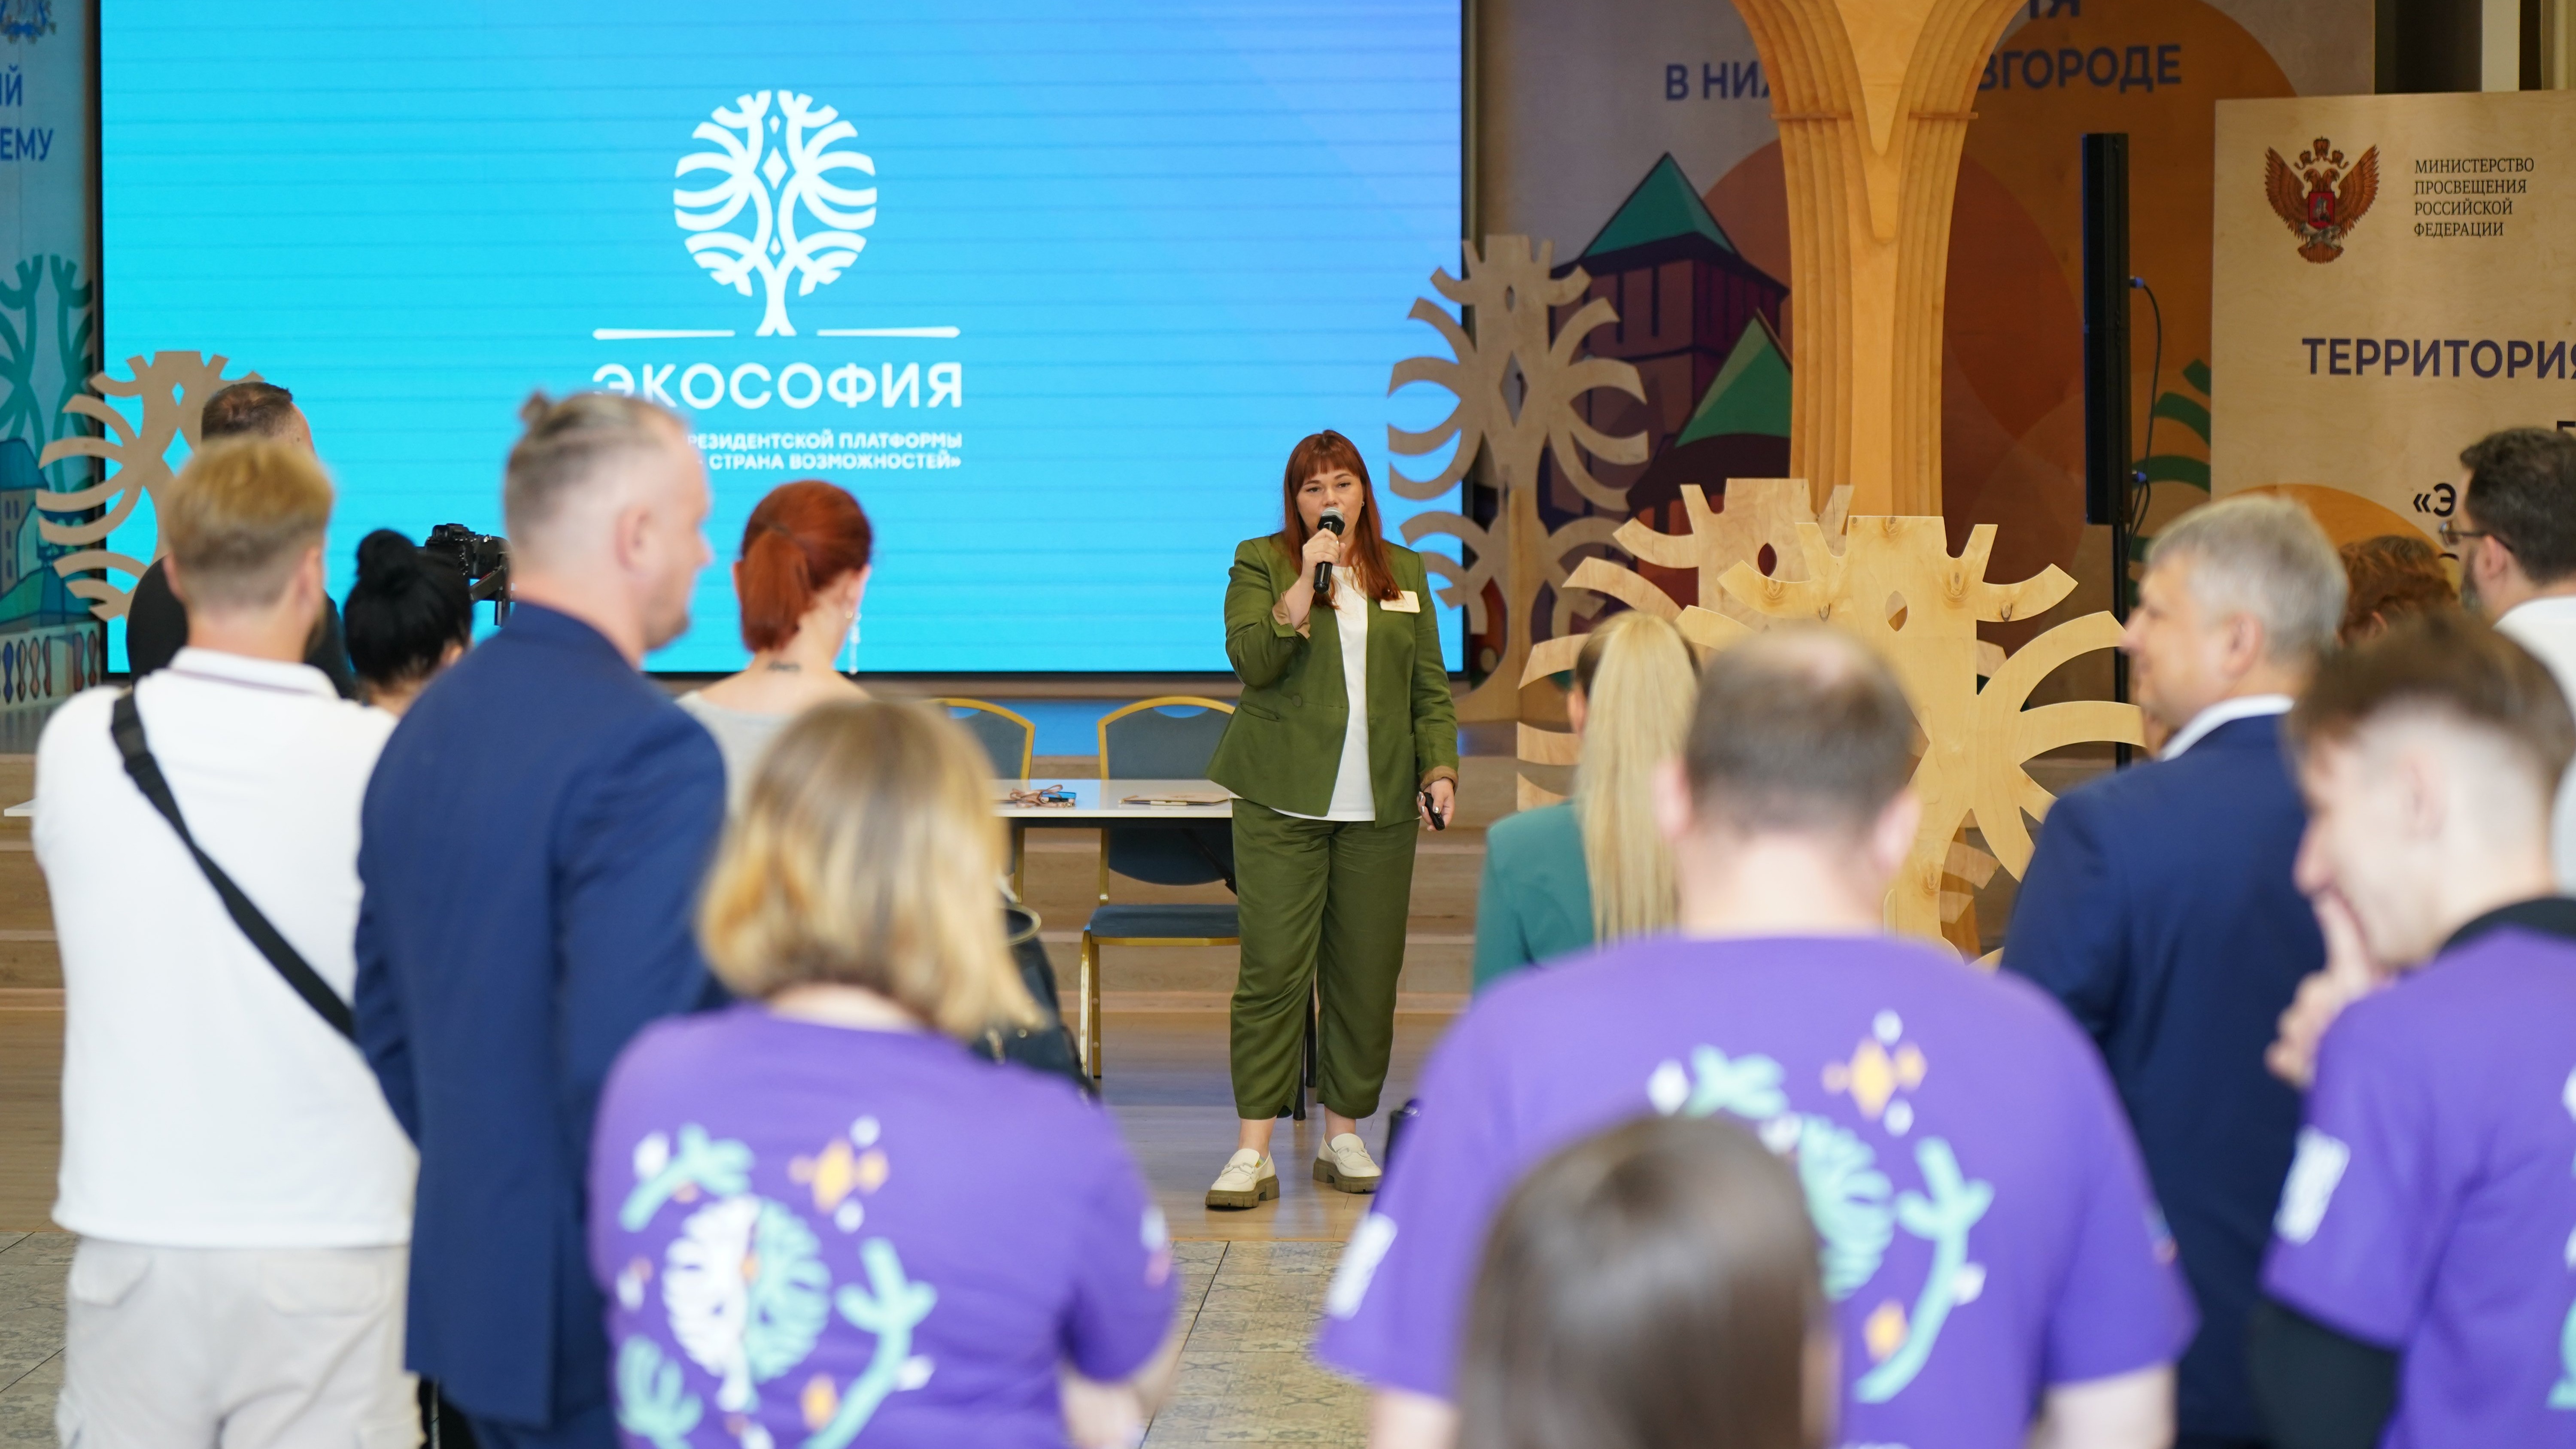 В Нижнем Новгороде прошла масштабная Экобиржа деловых контактов «Экософия объединяет»